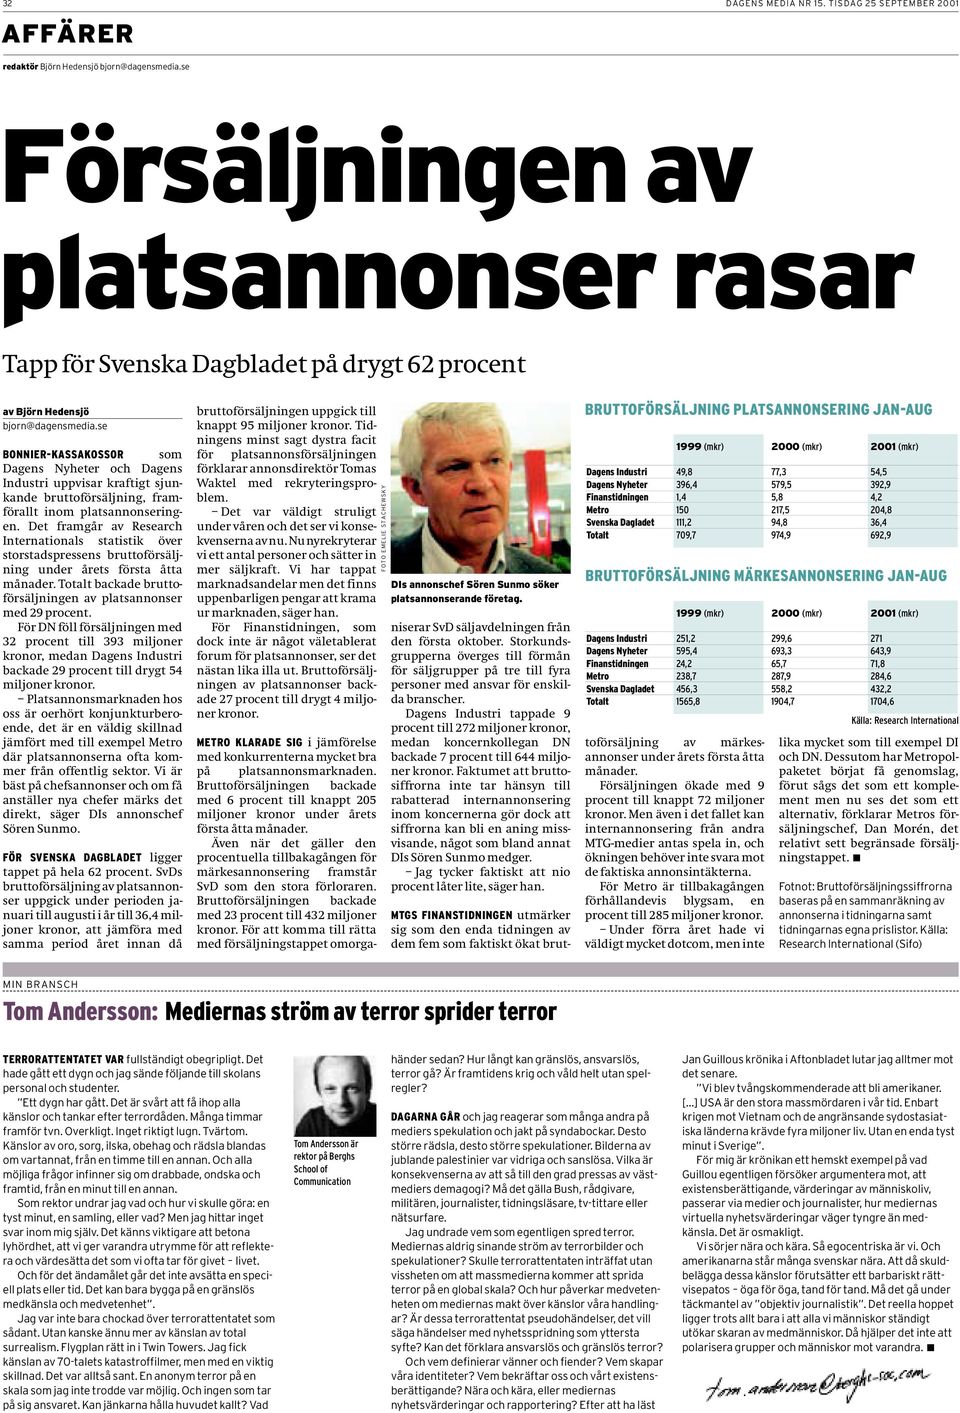 se BONNIER-KASSAKOSSOR som Dagens Nyheter och Dagens Industri uppvisar kraftigt sjunkande bruttoförsäljning, framförallt inom platsannonseringen.